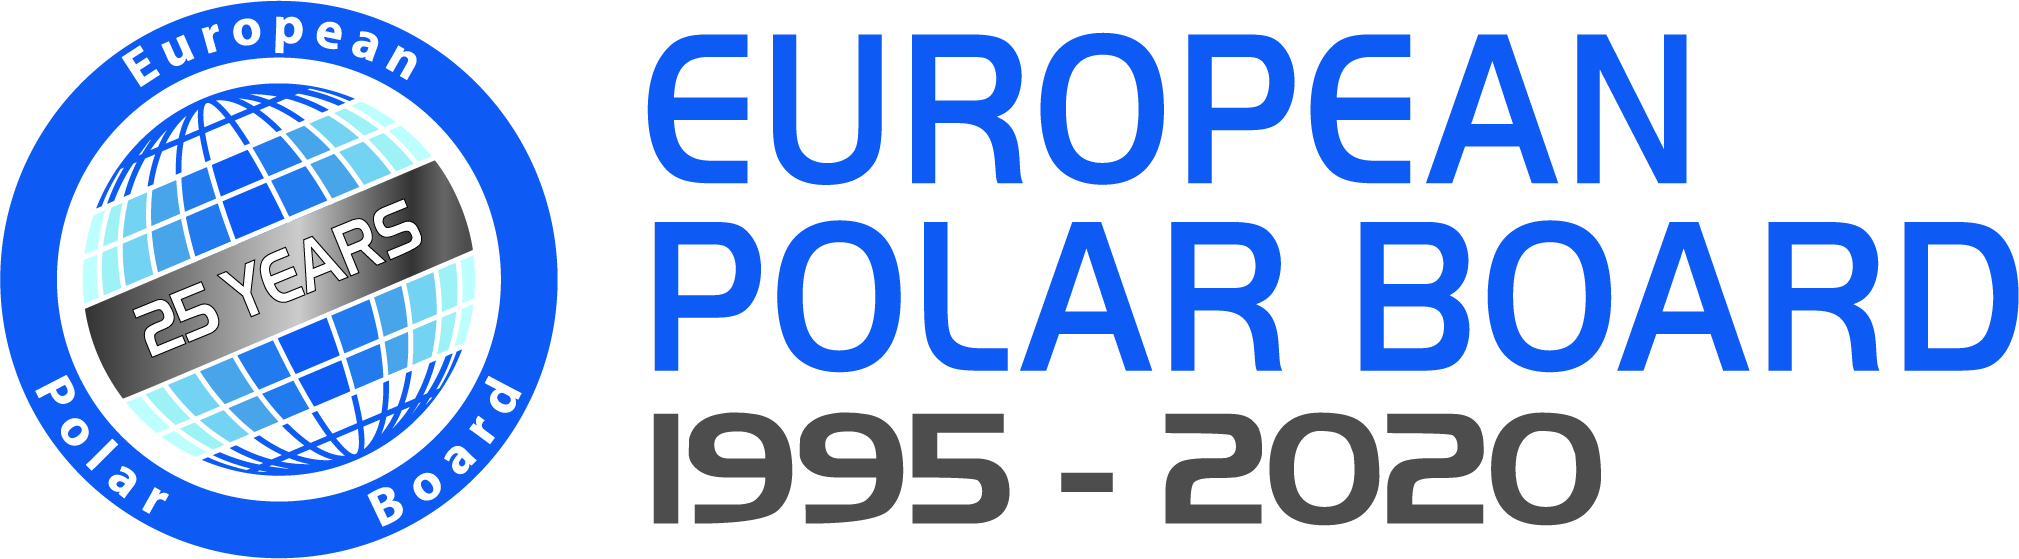 EPB 25 Year anniversary logo 2 large.jpg